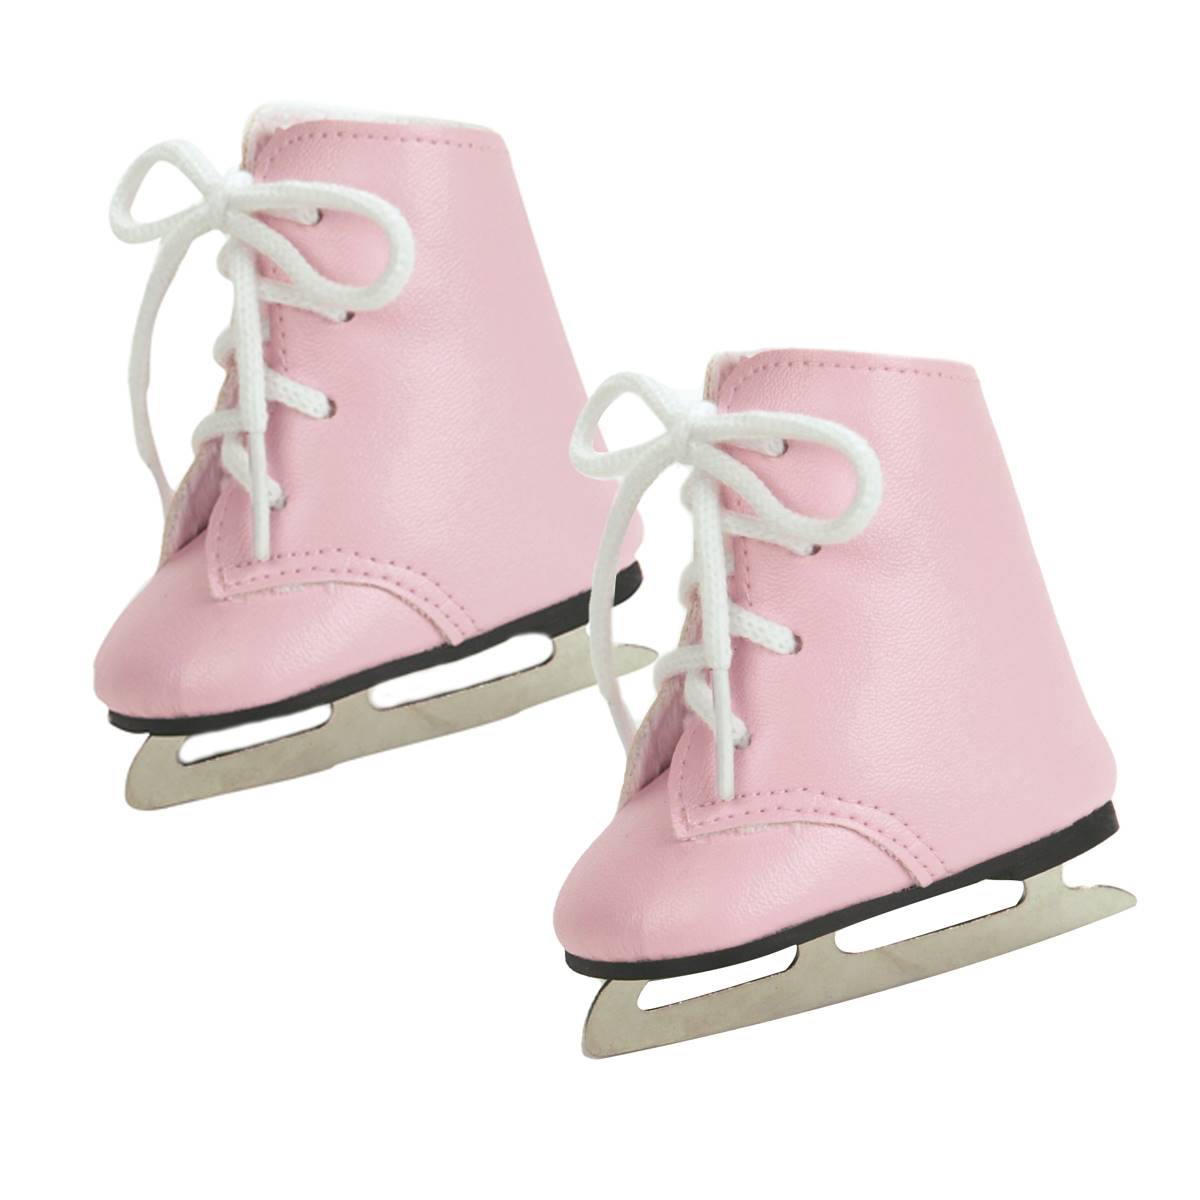 Sophia's(R) Ice Skates - Pink